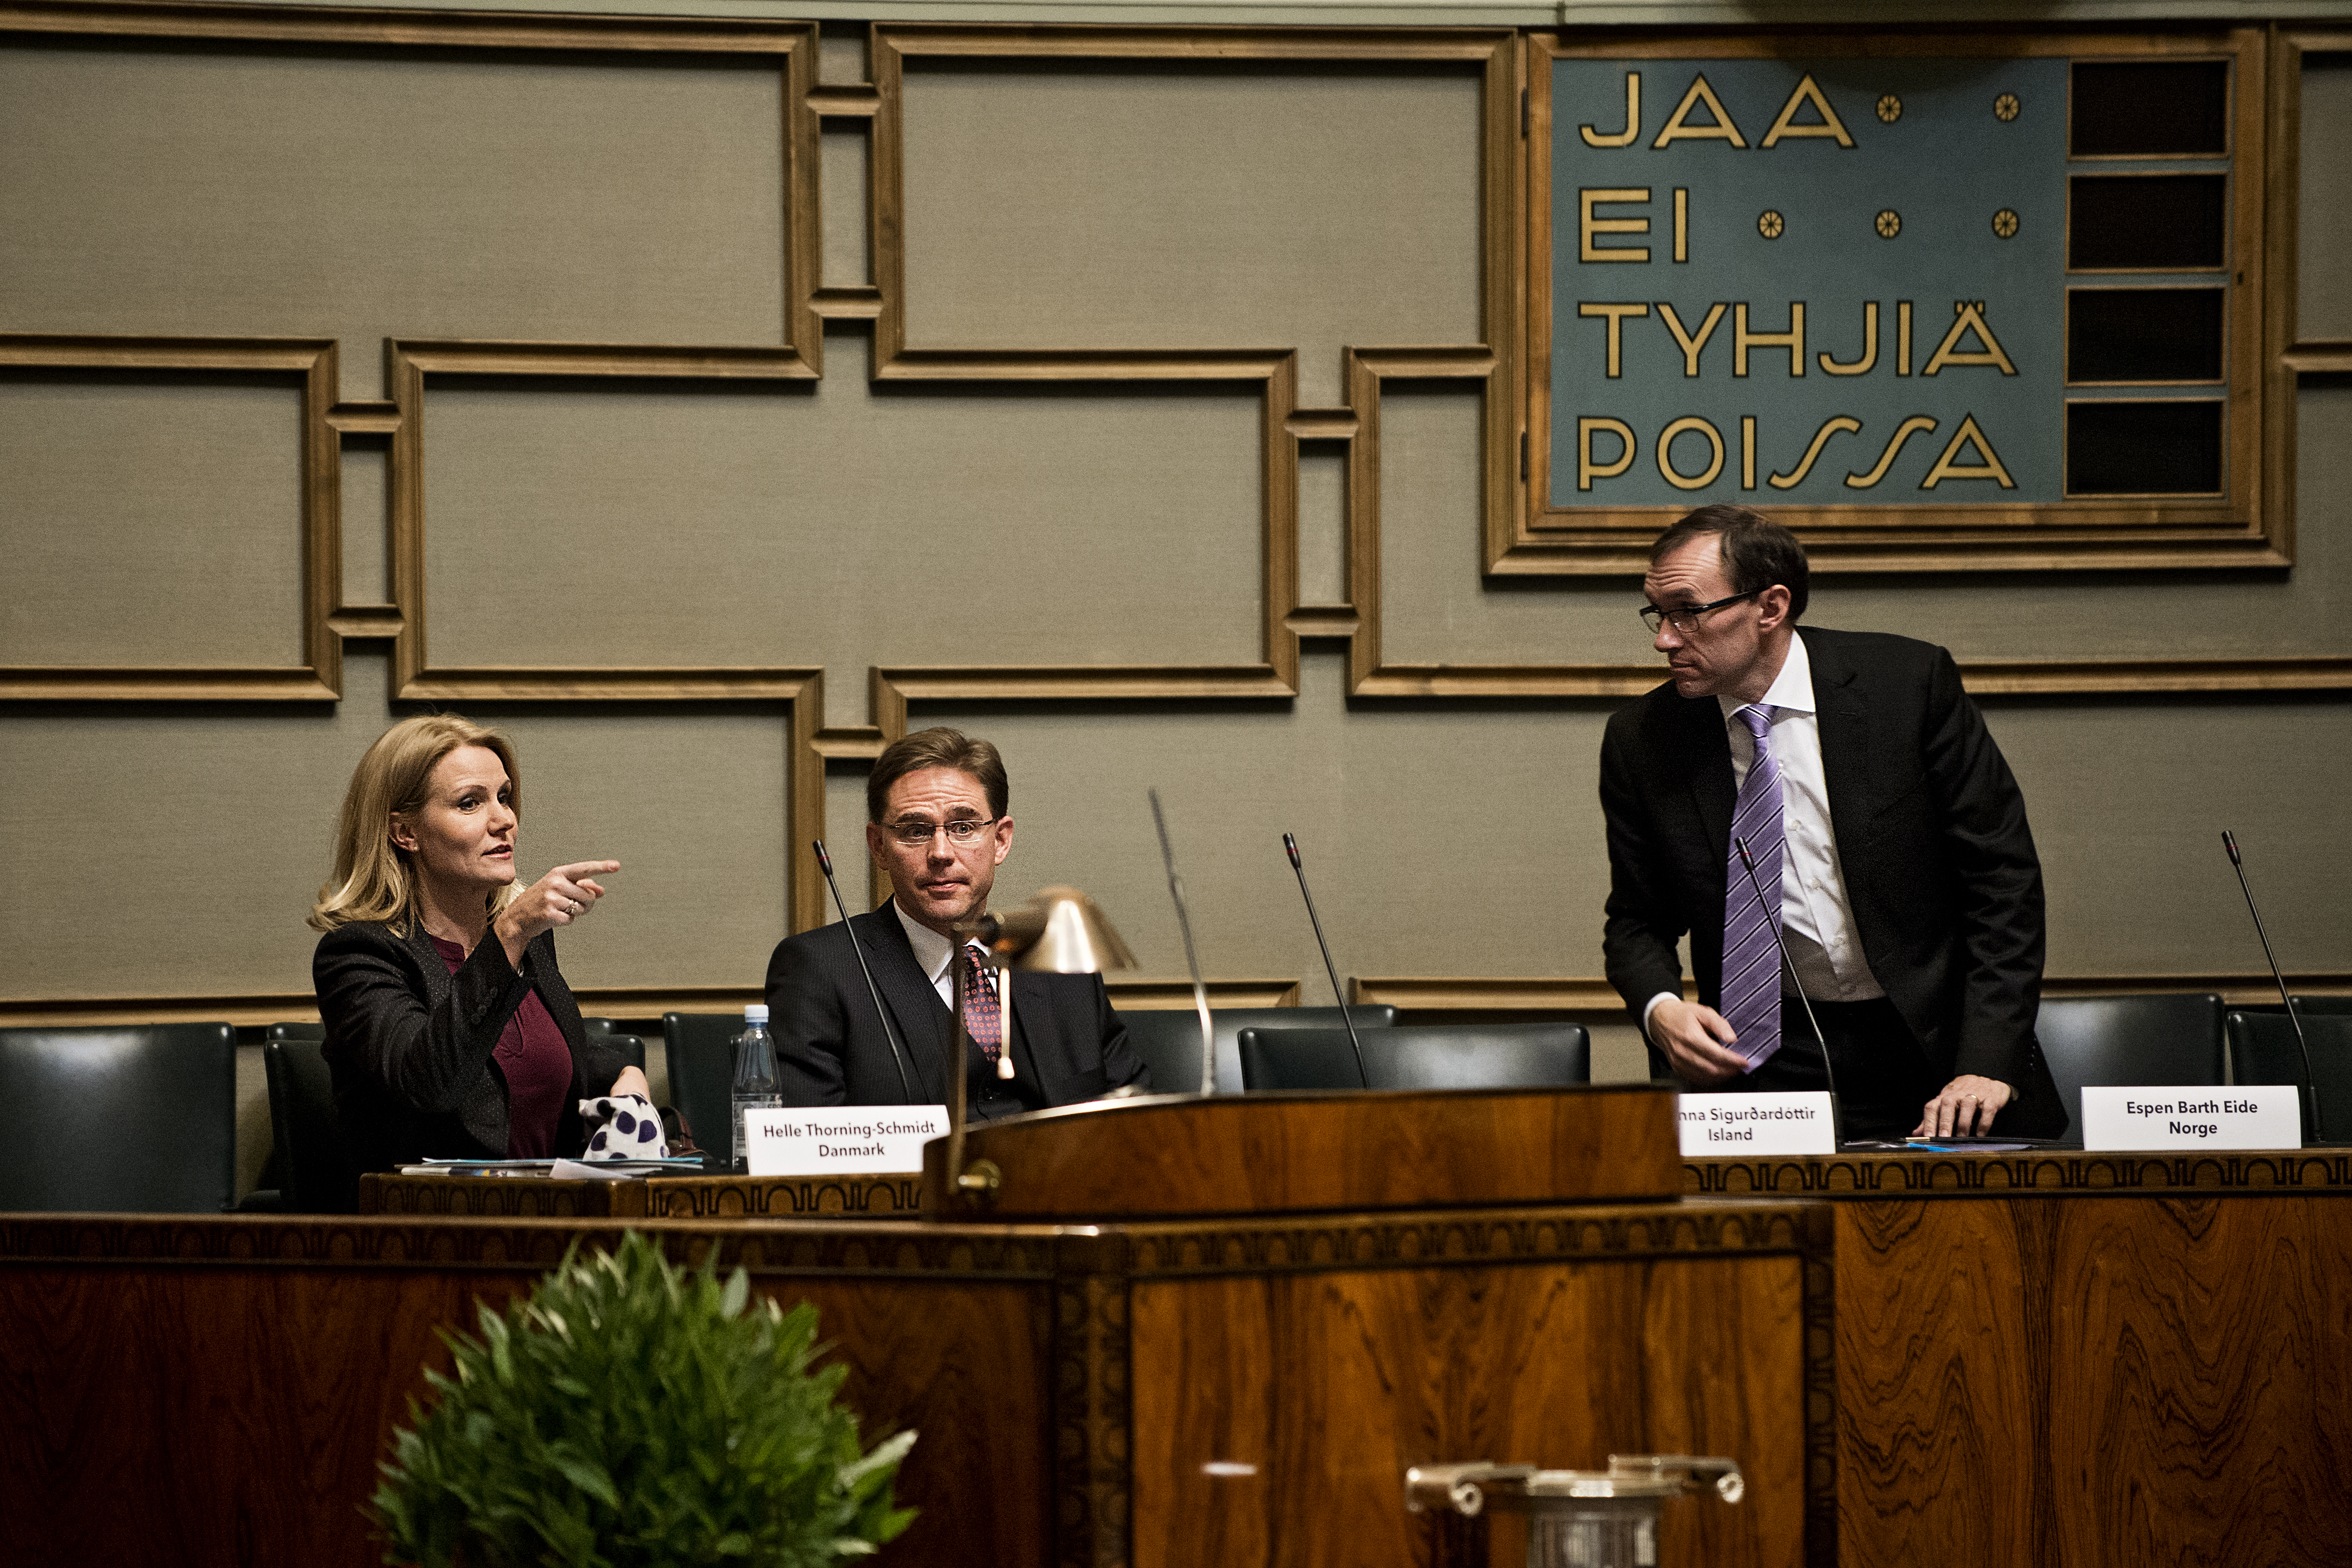 Danmarks statsminister Helle Thorning-Schmidt, Finlands statsminister Jyrki Katainen och norska politikern Espen Barth Eide